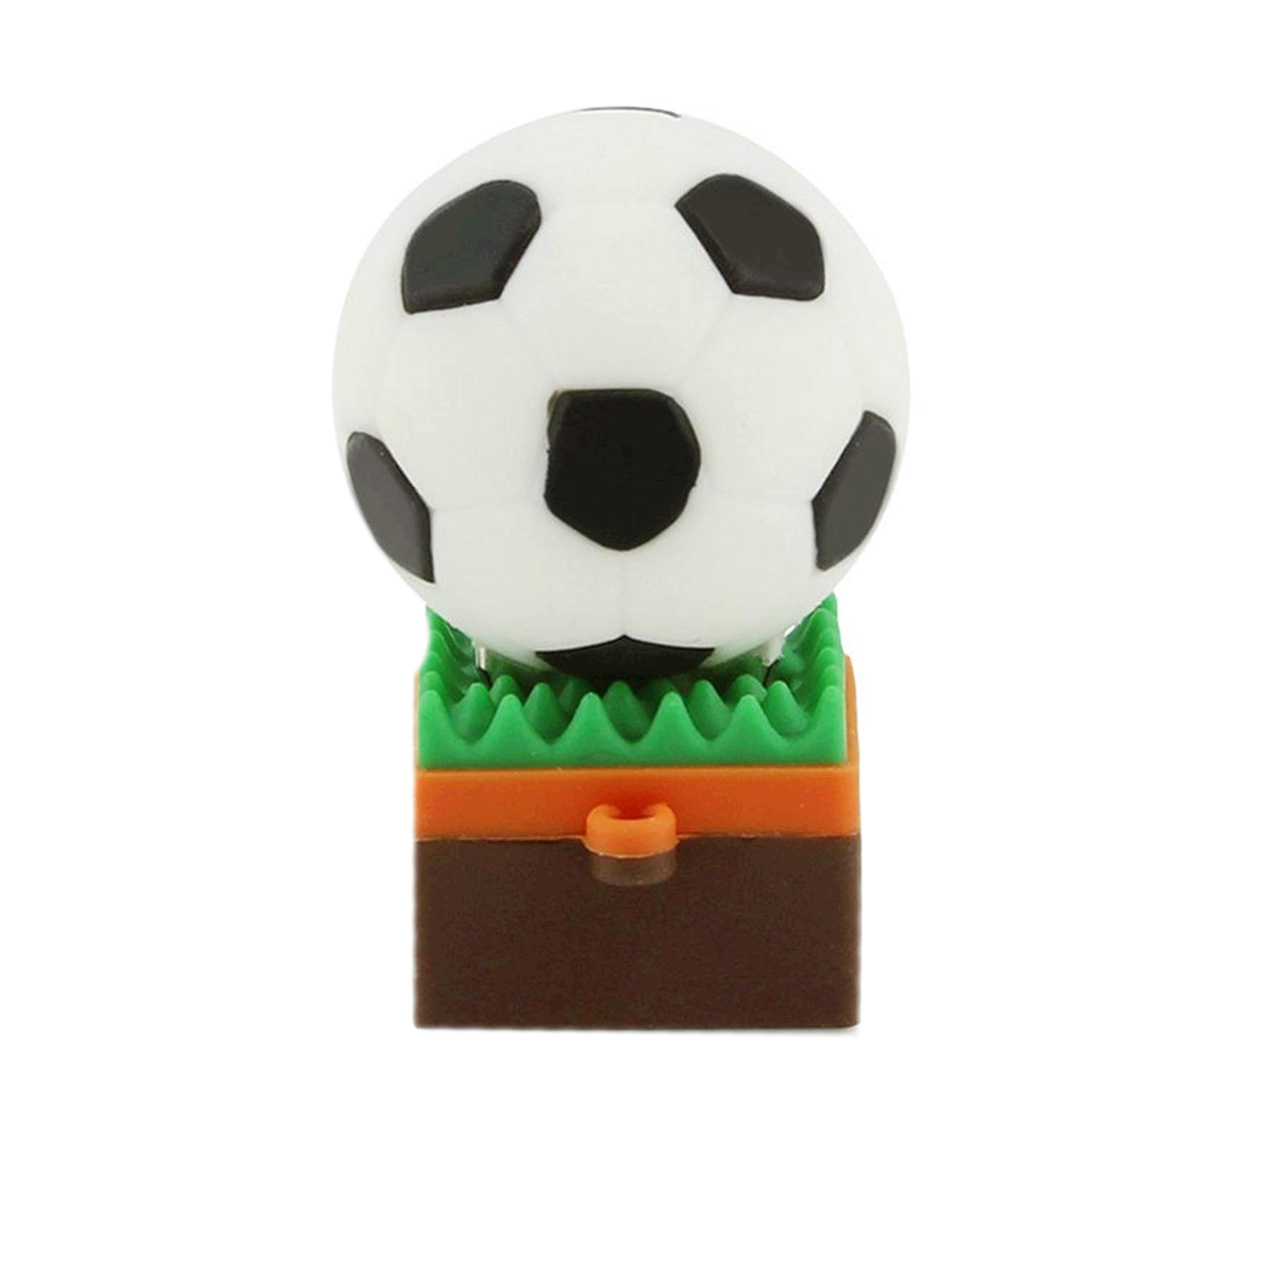 فلش مموری طرح Soccer ball on the grass مدل DAYA1119-U3 ظرفیت 64 گیگابایت